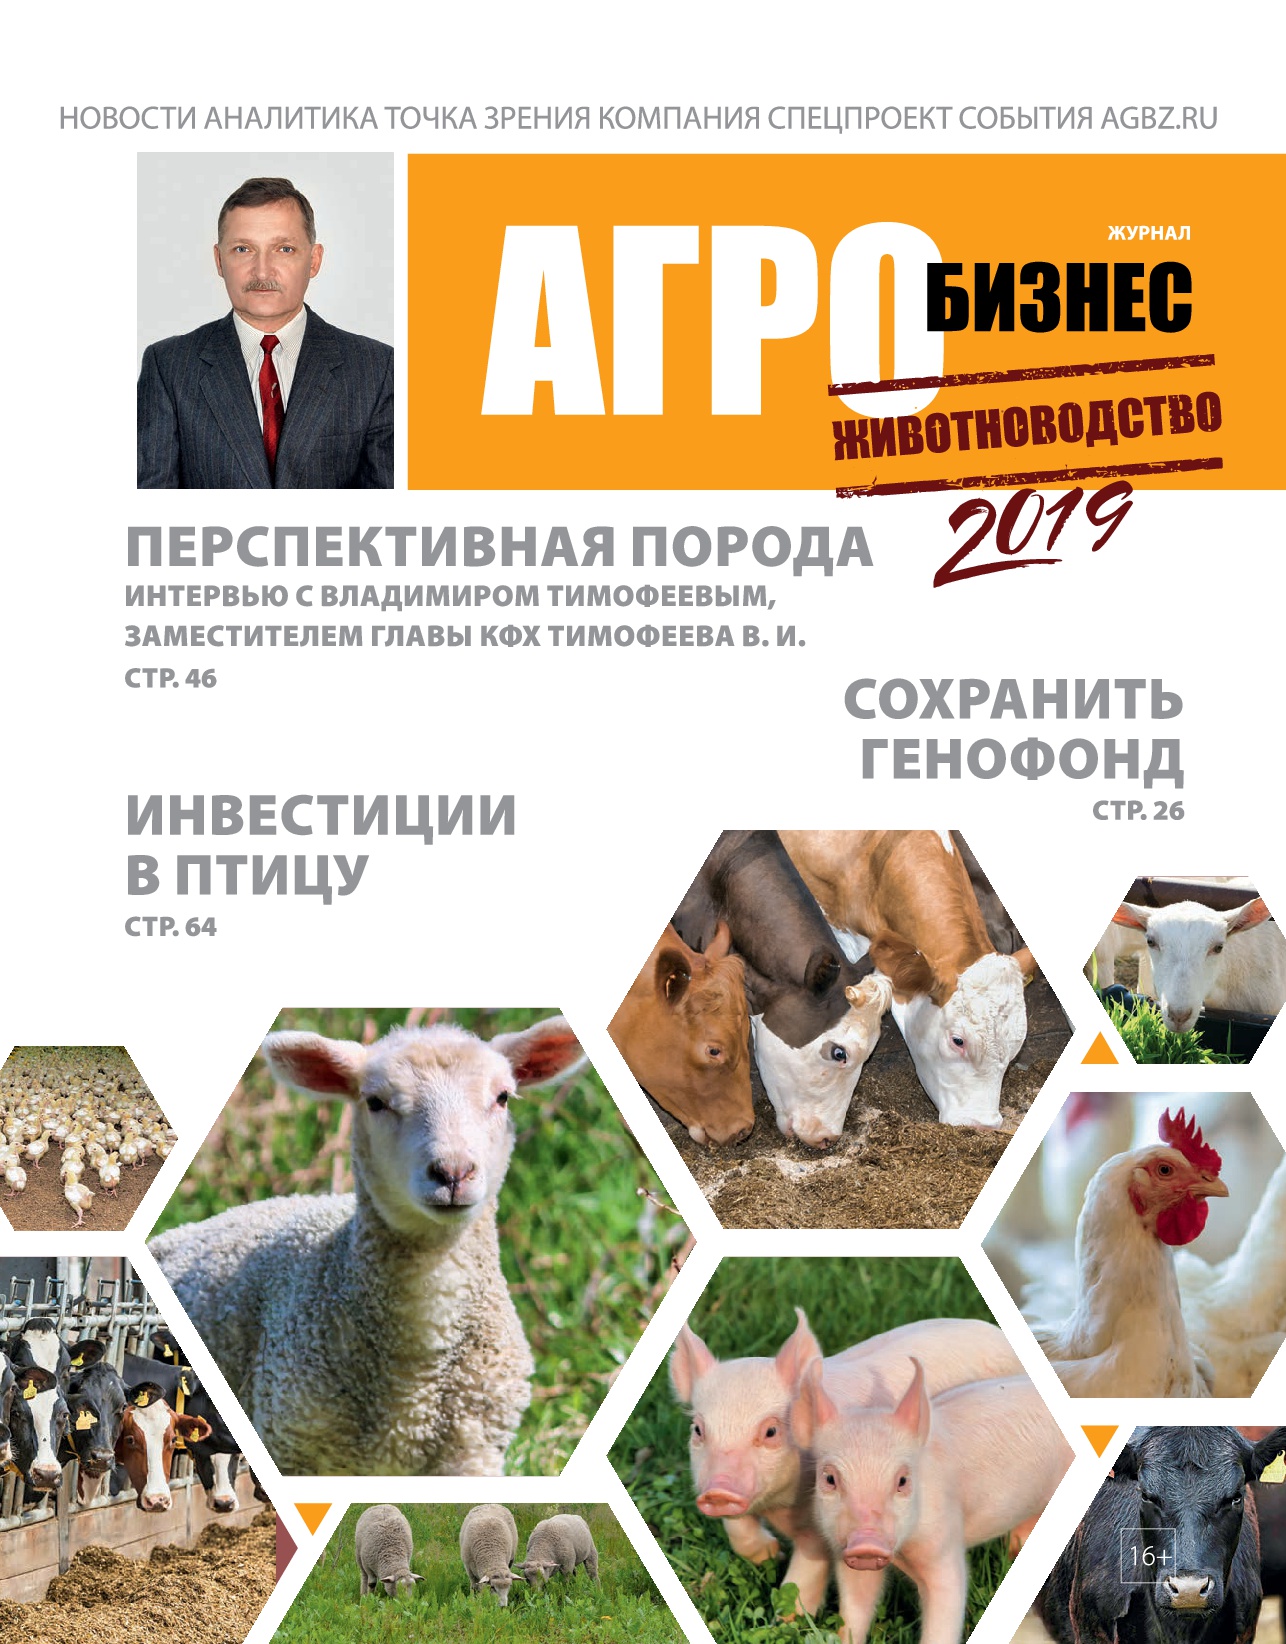 Выходит в свет новый печатный выпуск "Журнала Агробизнес" — спецпроект "Животноводство"